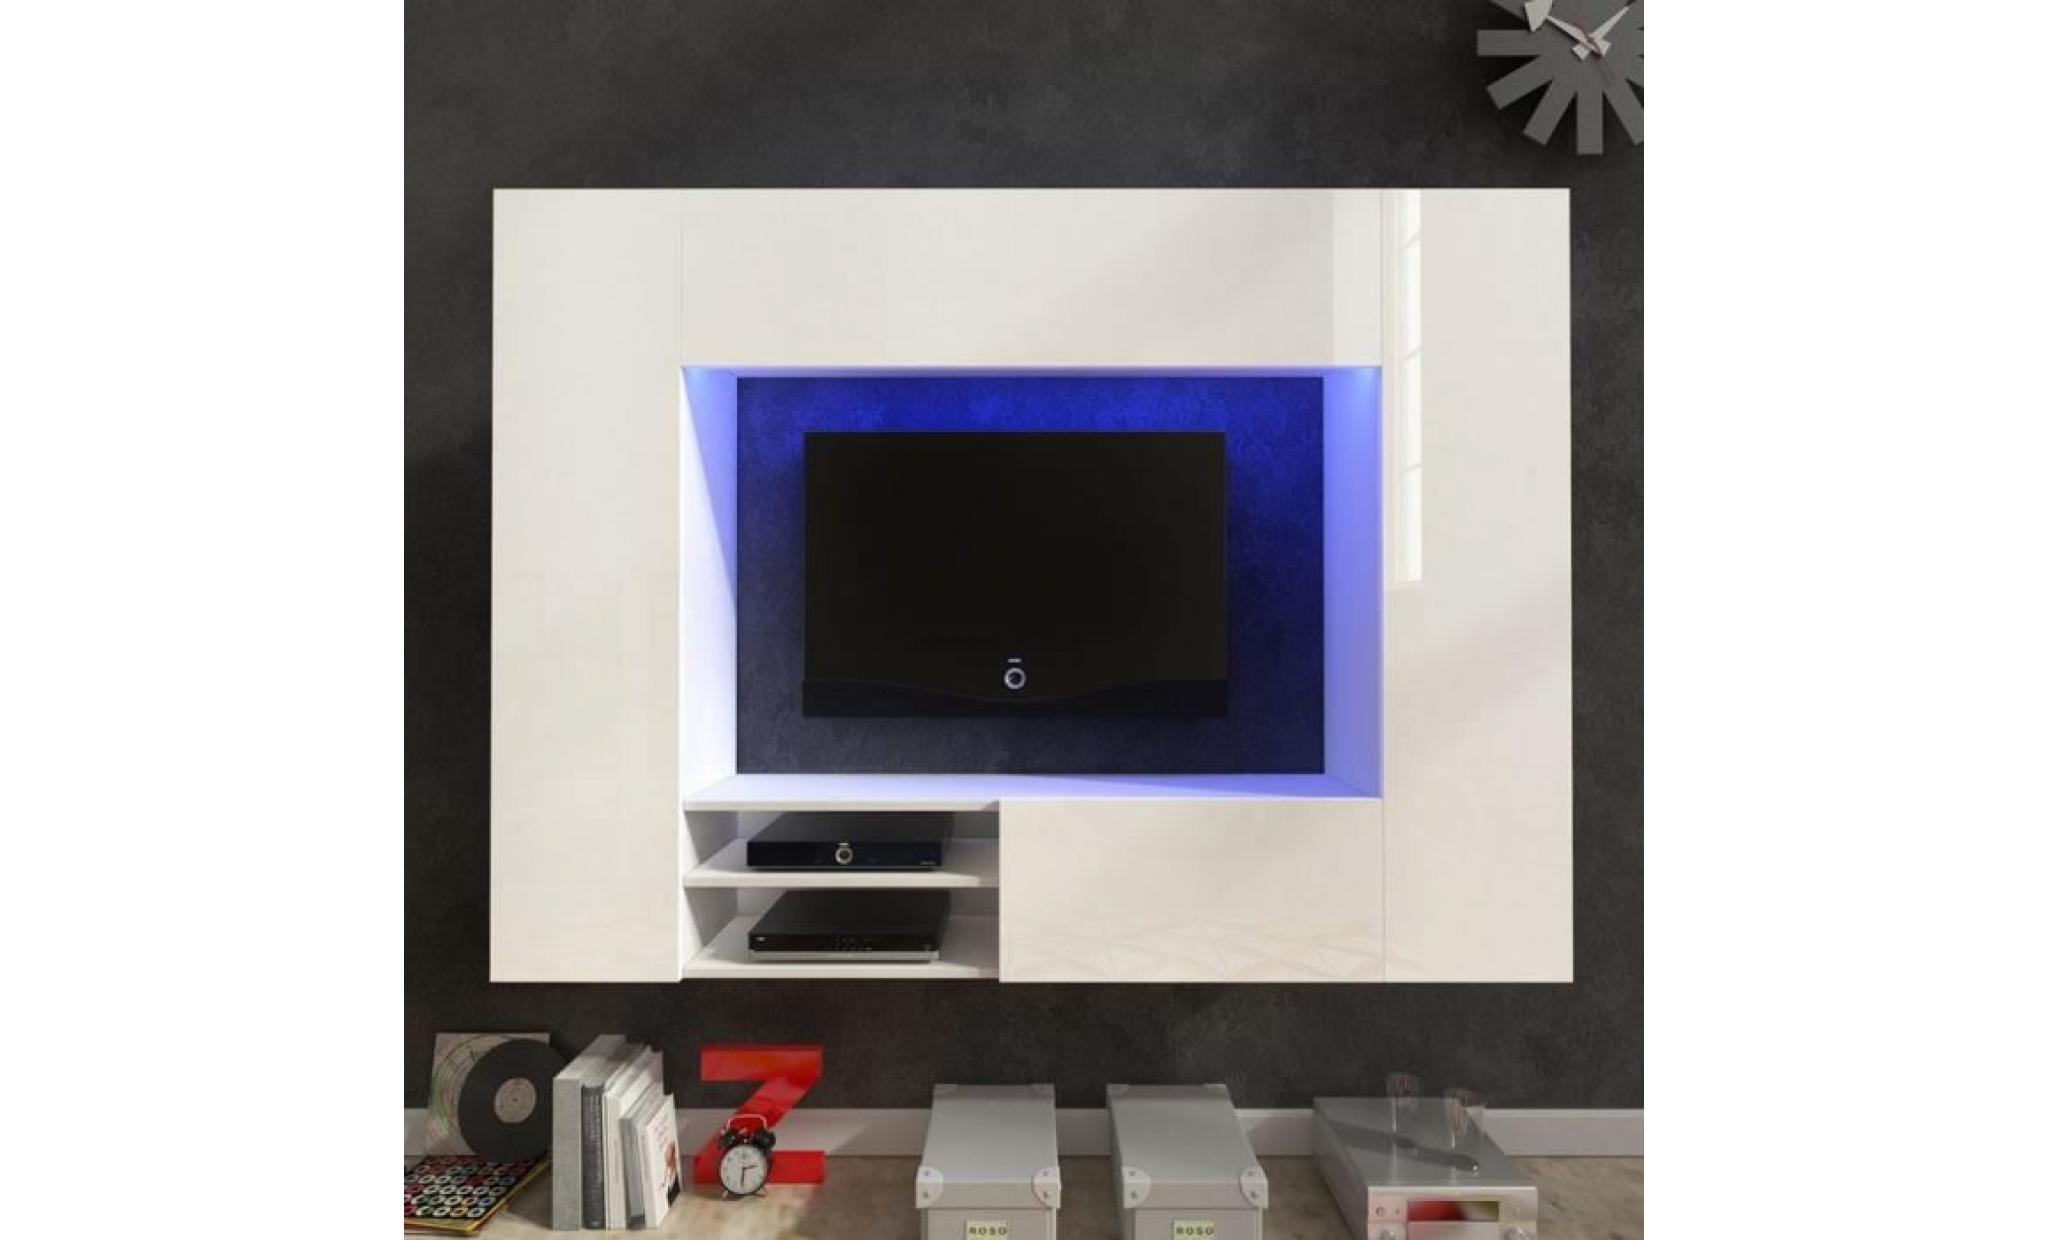 meubles audio/video et pour home cinema couleur : chene materiau : mdf et verre trempe dimensions : 115 x 40 x 45 cm (